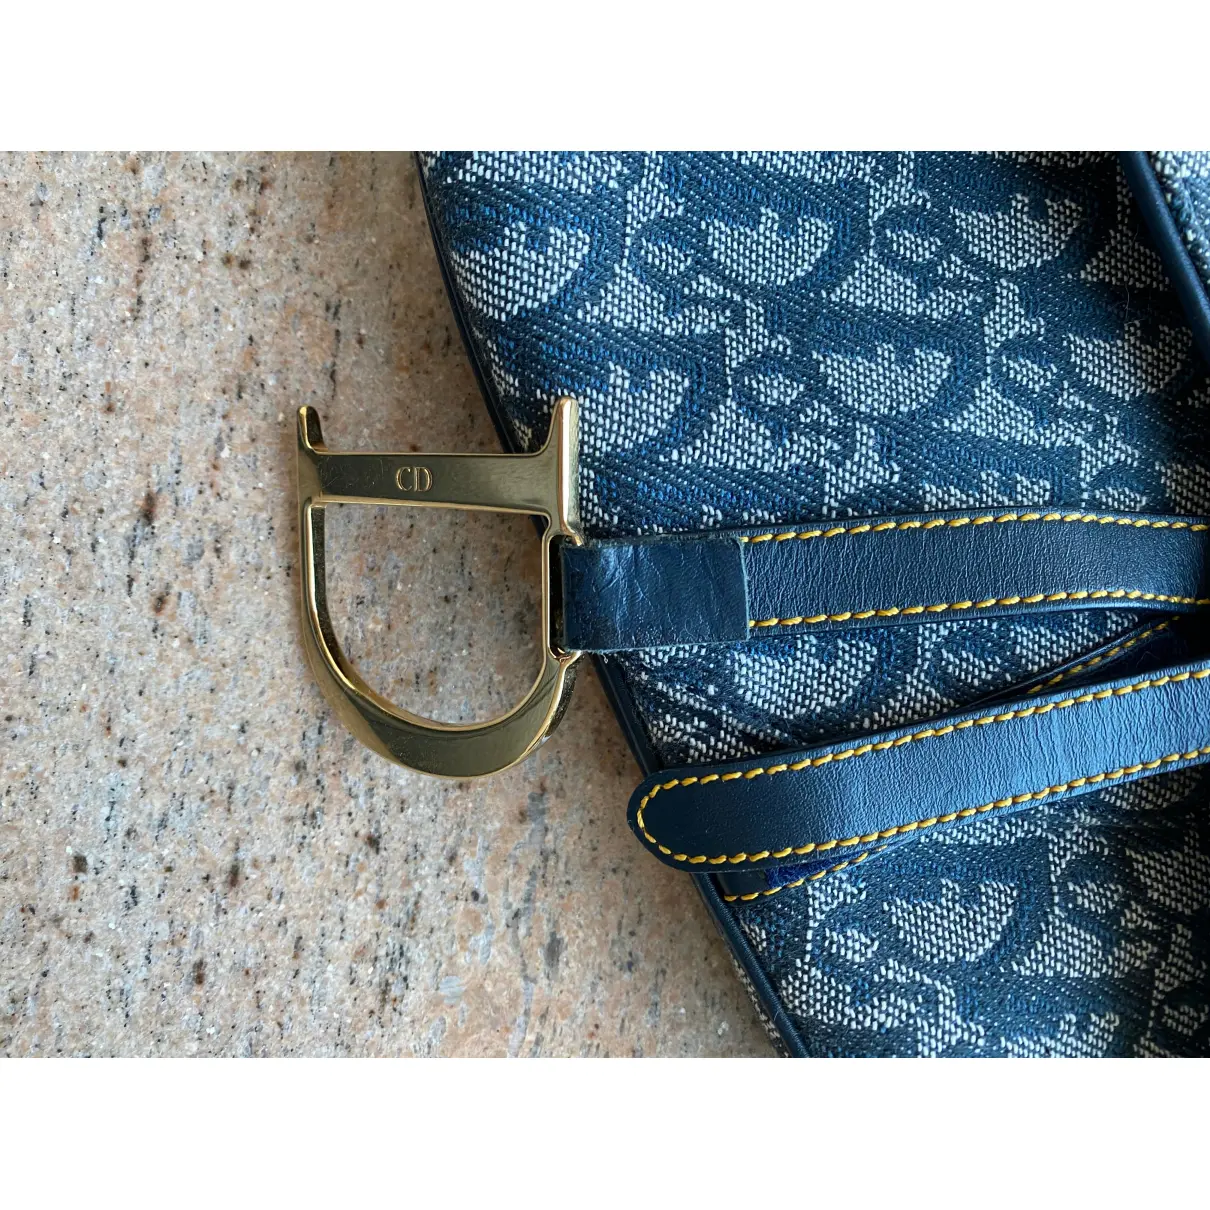 Dior Saddle Vintage cloth handbag for sale - Vintage